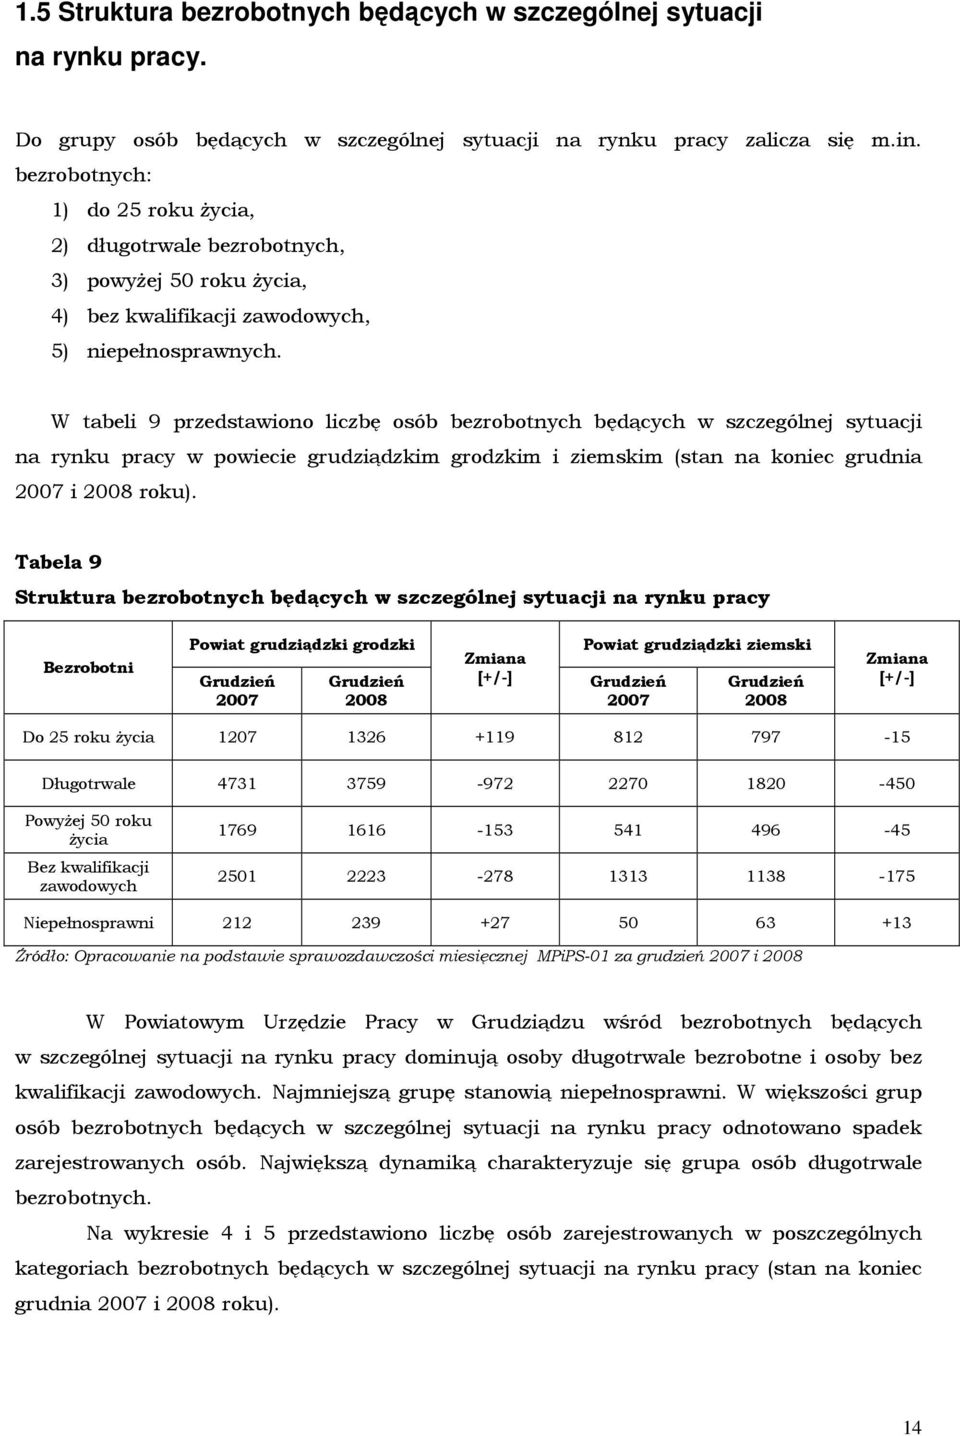 W tabeli 9 przedstawiono liczbę osób bezrobotnych będących w szczególnej sytuacji na rynku pracy w powiecie grudziądzkim grodzkim i ziemskim (stan na koniec grudnia 2007 i 2008 roku).